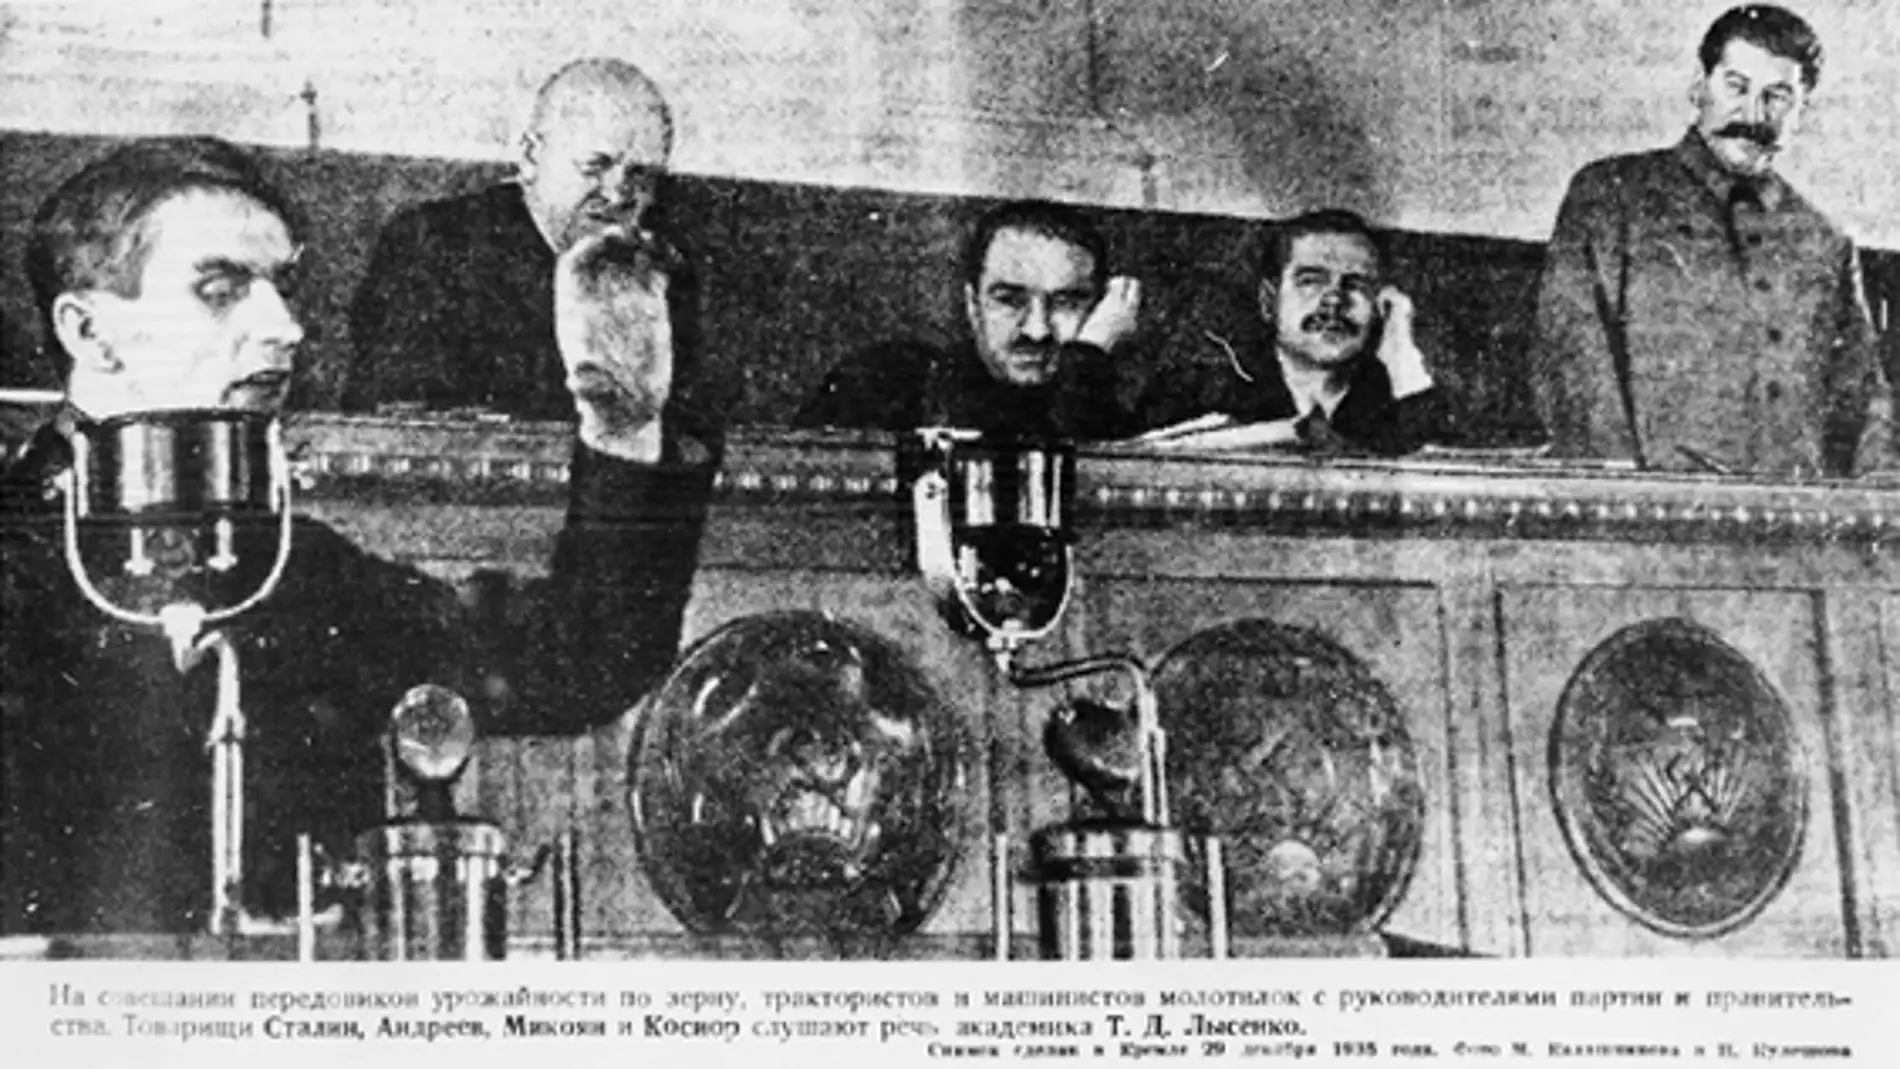 Lysenko hablando en el Kremlin en 1935. A la derecha, Stalin